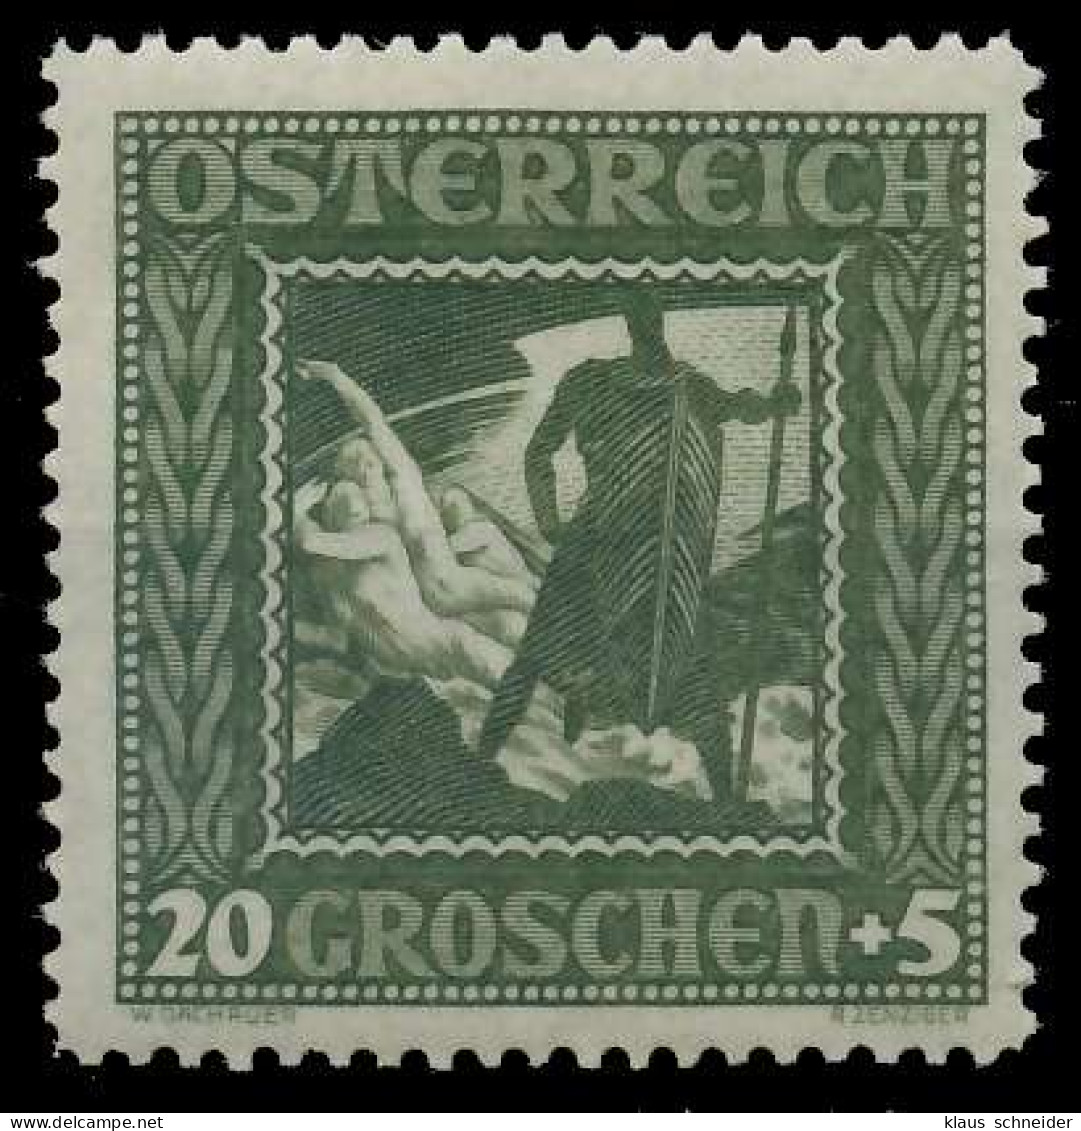 ÖSTERREICH 1926 Nr 491I Postfrisch X6FADBE - Ungebraucht